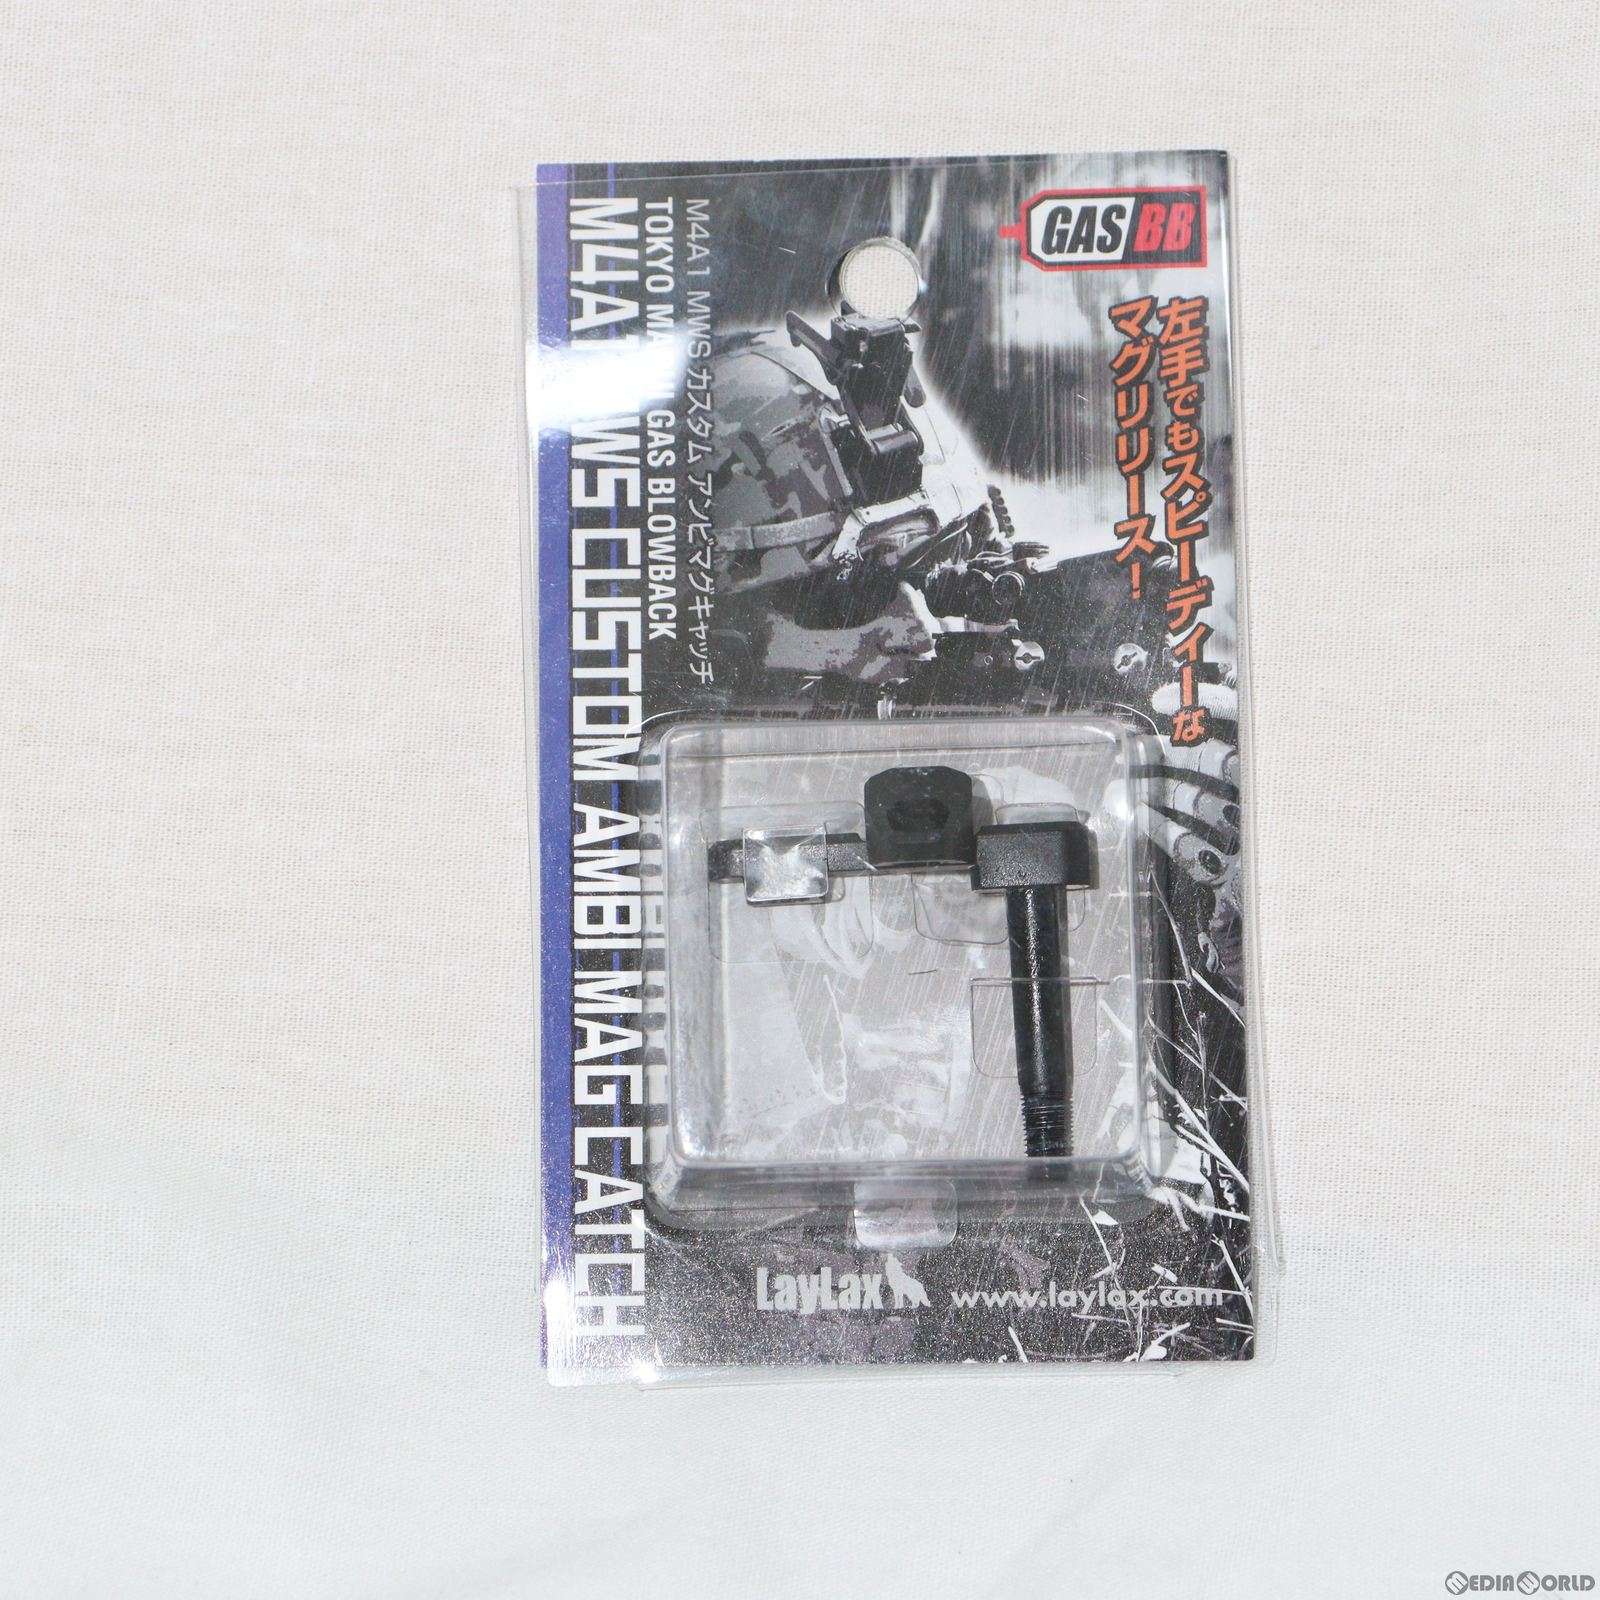 【中古即納】[MIL]LayLax(ライラクス) F.FACTORY(ファーストファクトリー) 東京マルイ ガスブローバック M4シリーズ カスタム アンビマグ